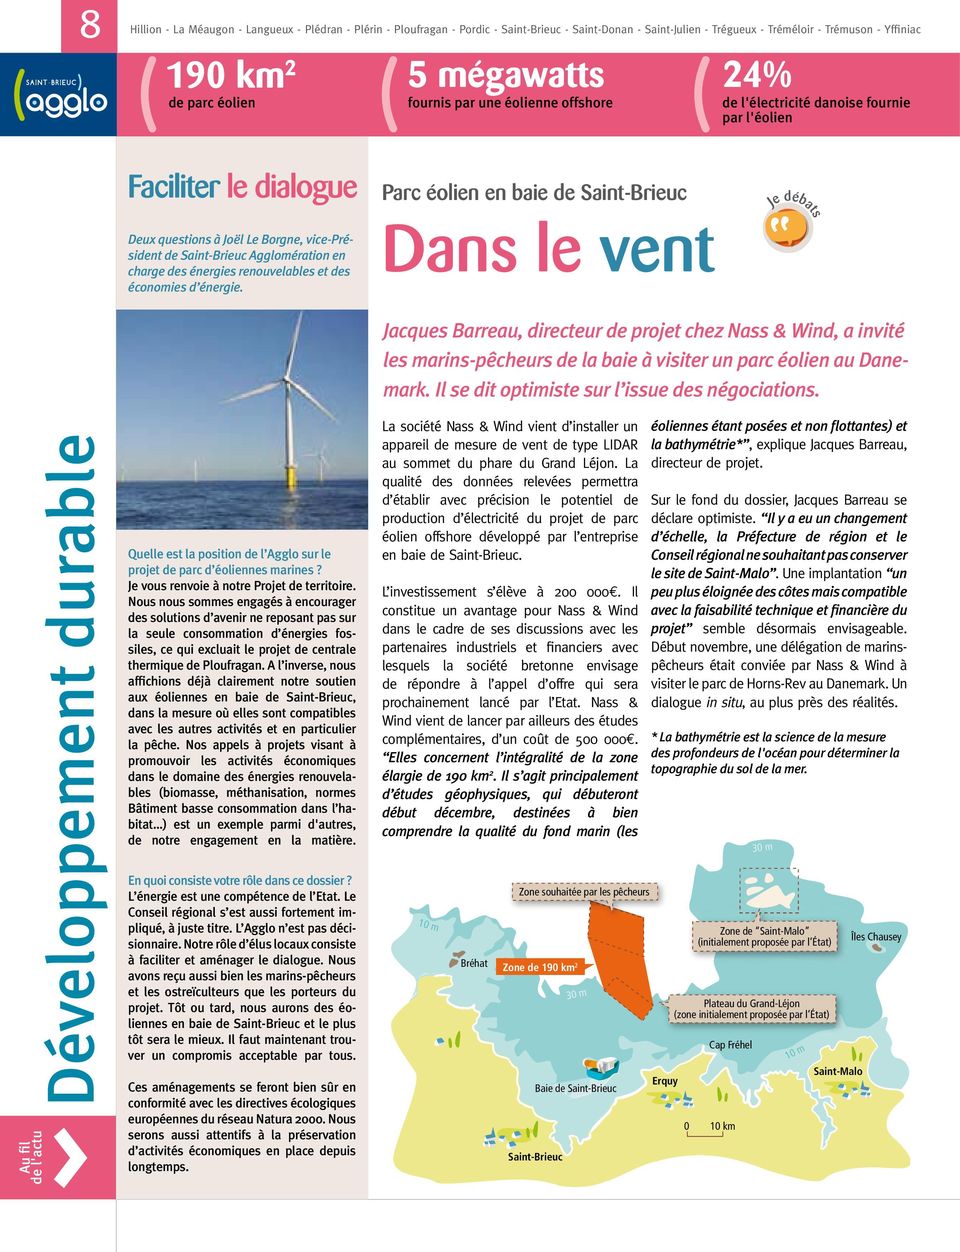 vice-président de Saint-Brieuc Agglomération en charge des énergies renouvelables et des économies d énergie.